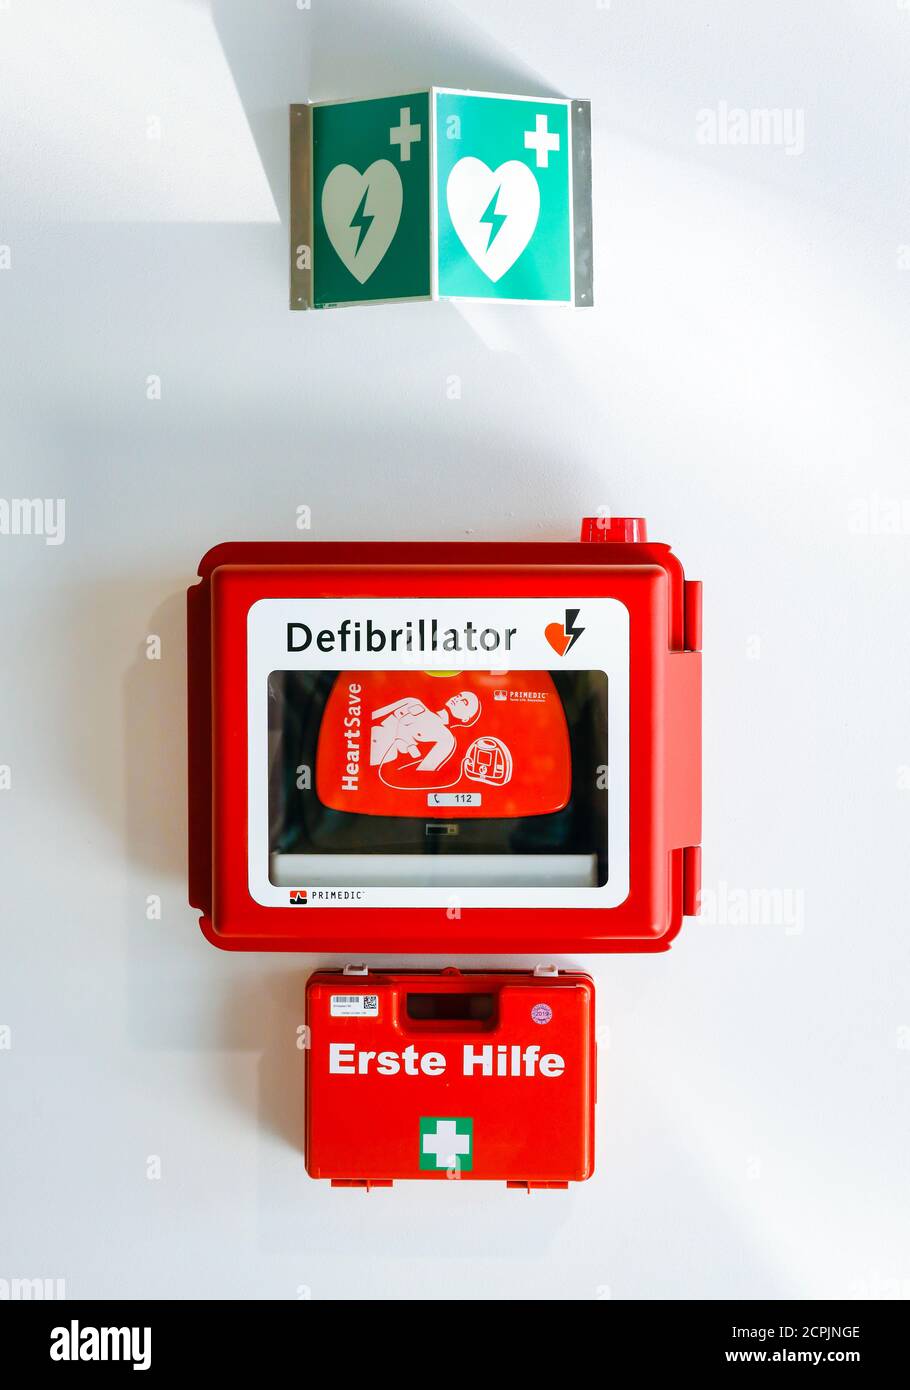 Il defibrillatore e il kit di pronto soccorso sono appesi a una parete nello spazio pubblico dell'aeroporto di Düsseldorf, Renania settentrionale-Vestfalia, Germania Foto Stock